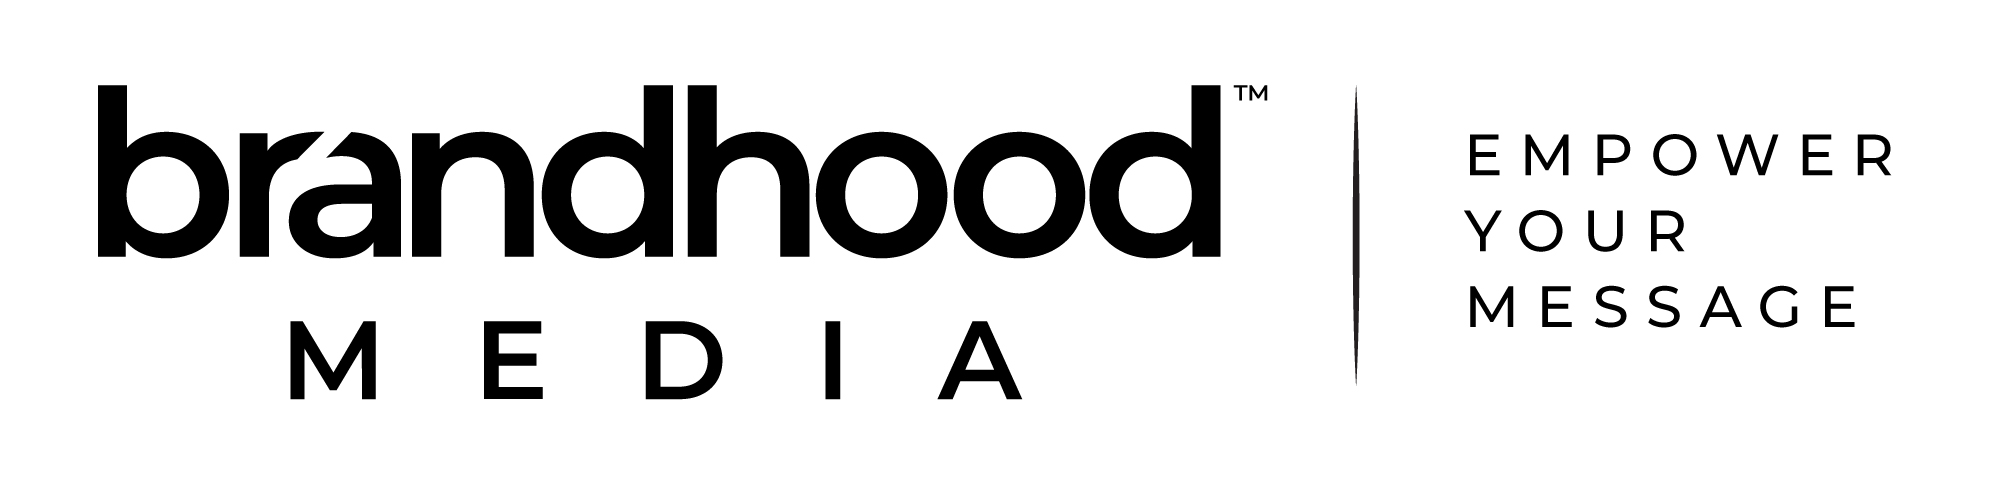 Brandhood Media